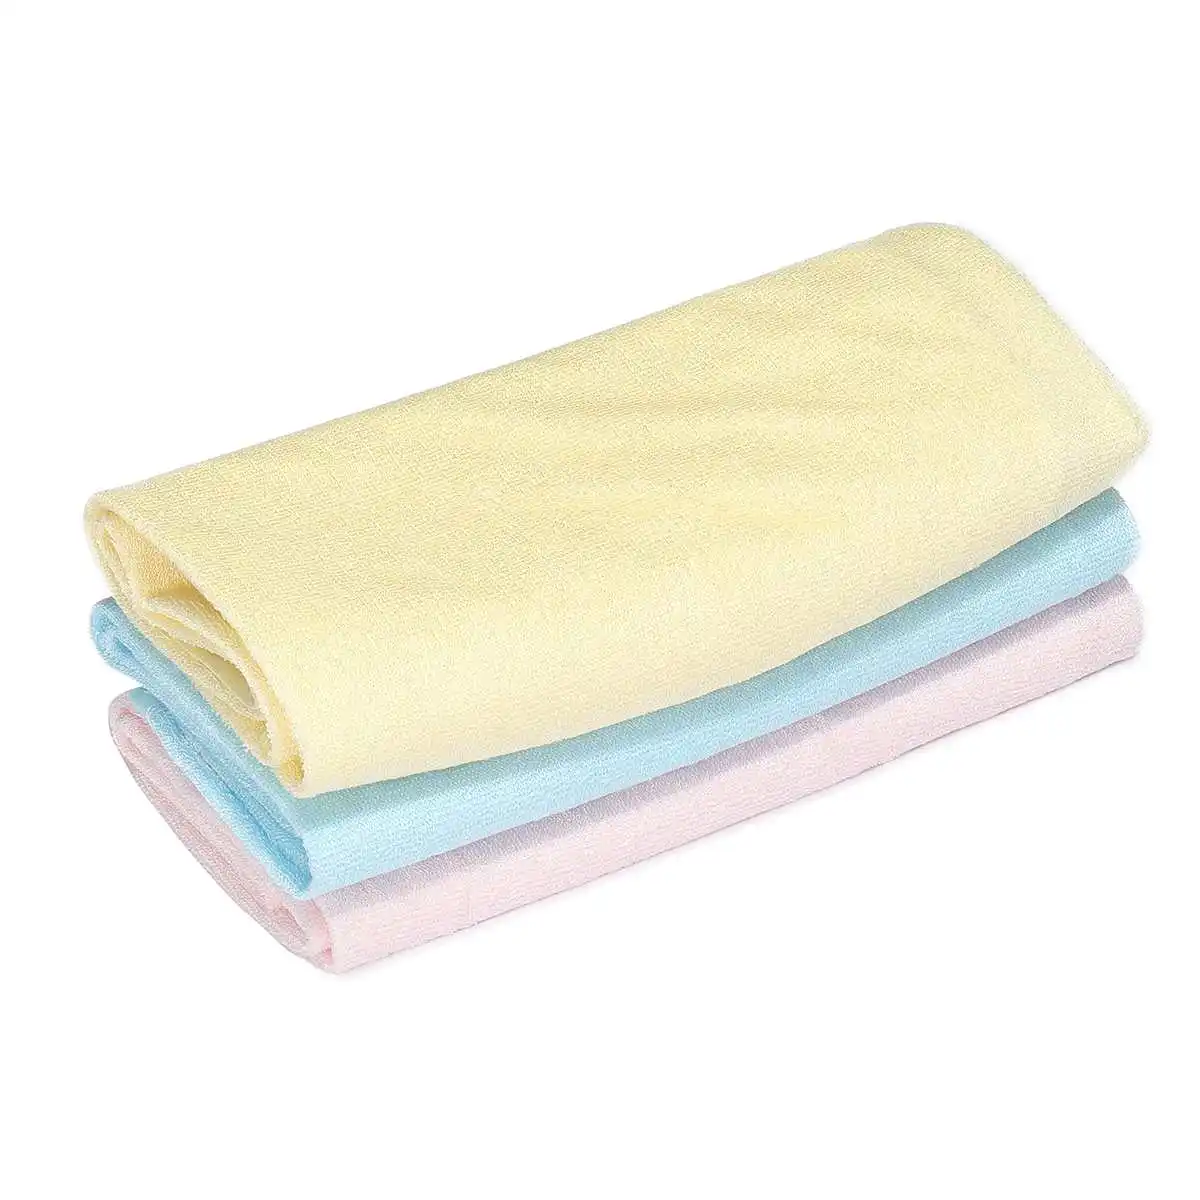 Водонепроницаемый моющийся многоразовый коврик для кровати для детей, для детей, для пожилых, для недержания влага в кровати, чехол для матраса, 3 цвета, 7 размеров